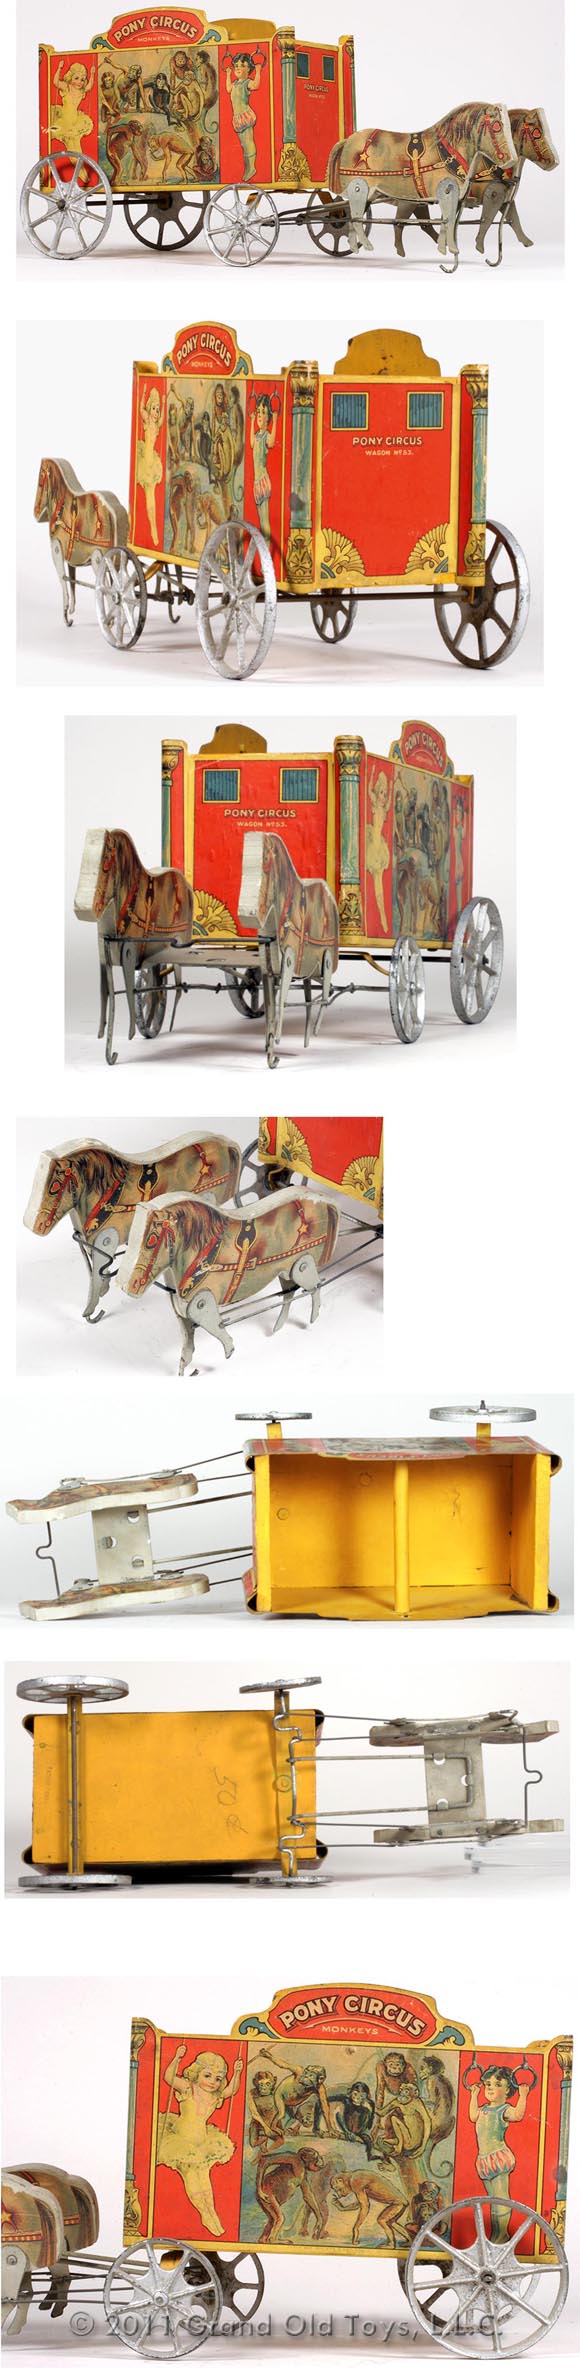 1912 Gibbs Mfg. Co., No. 53 Pony Circus Wagon